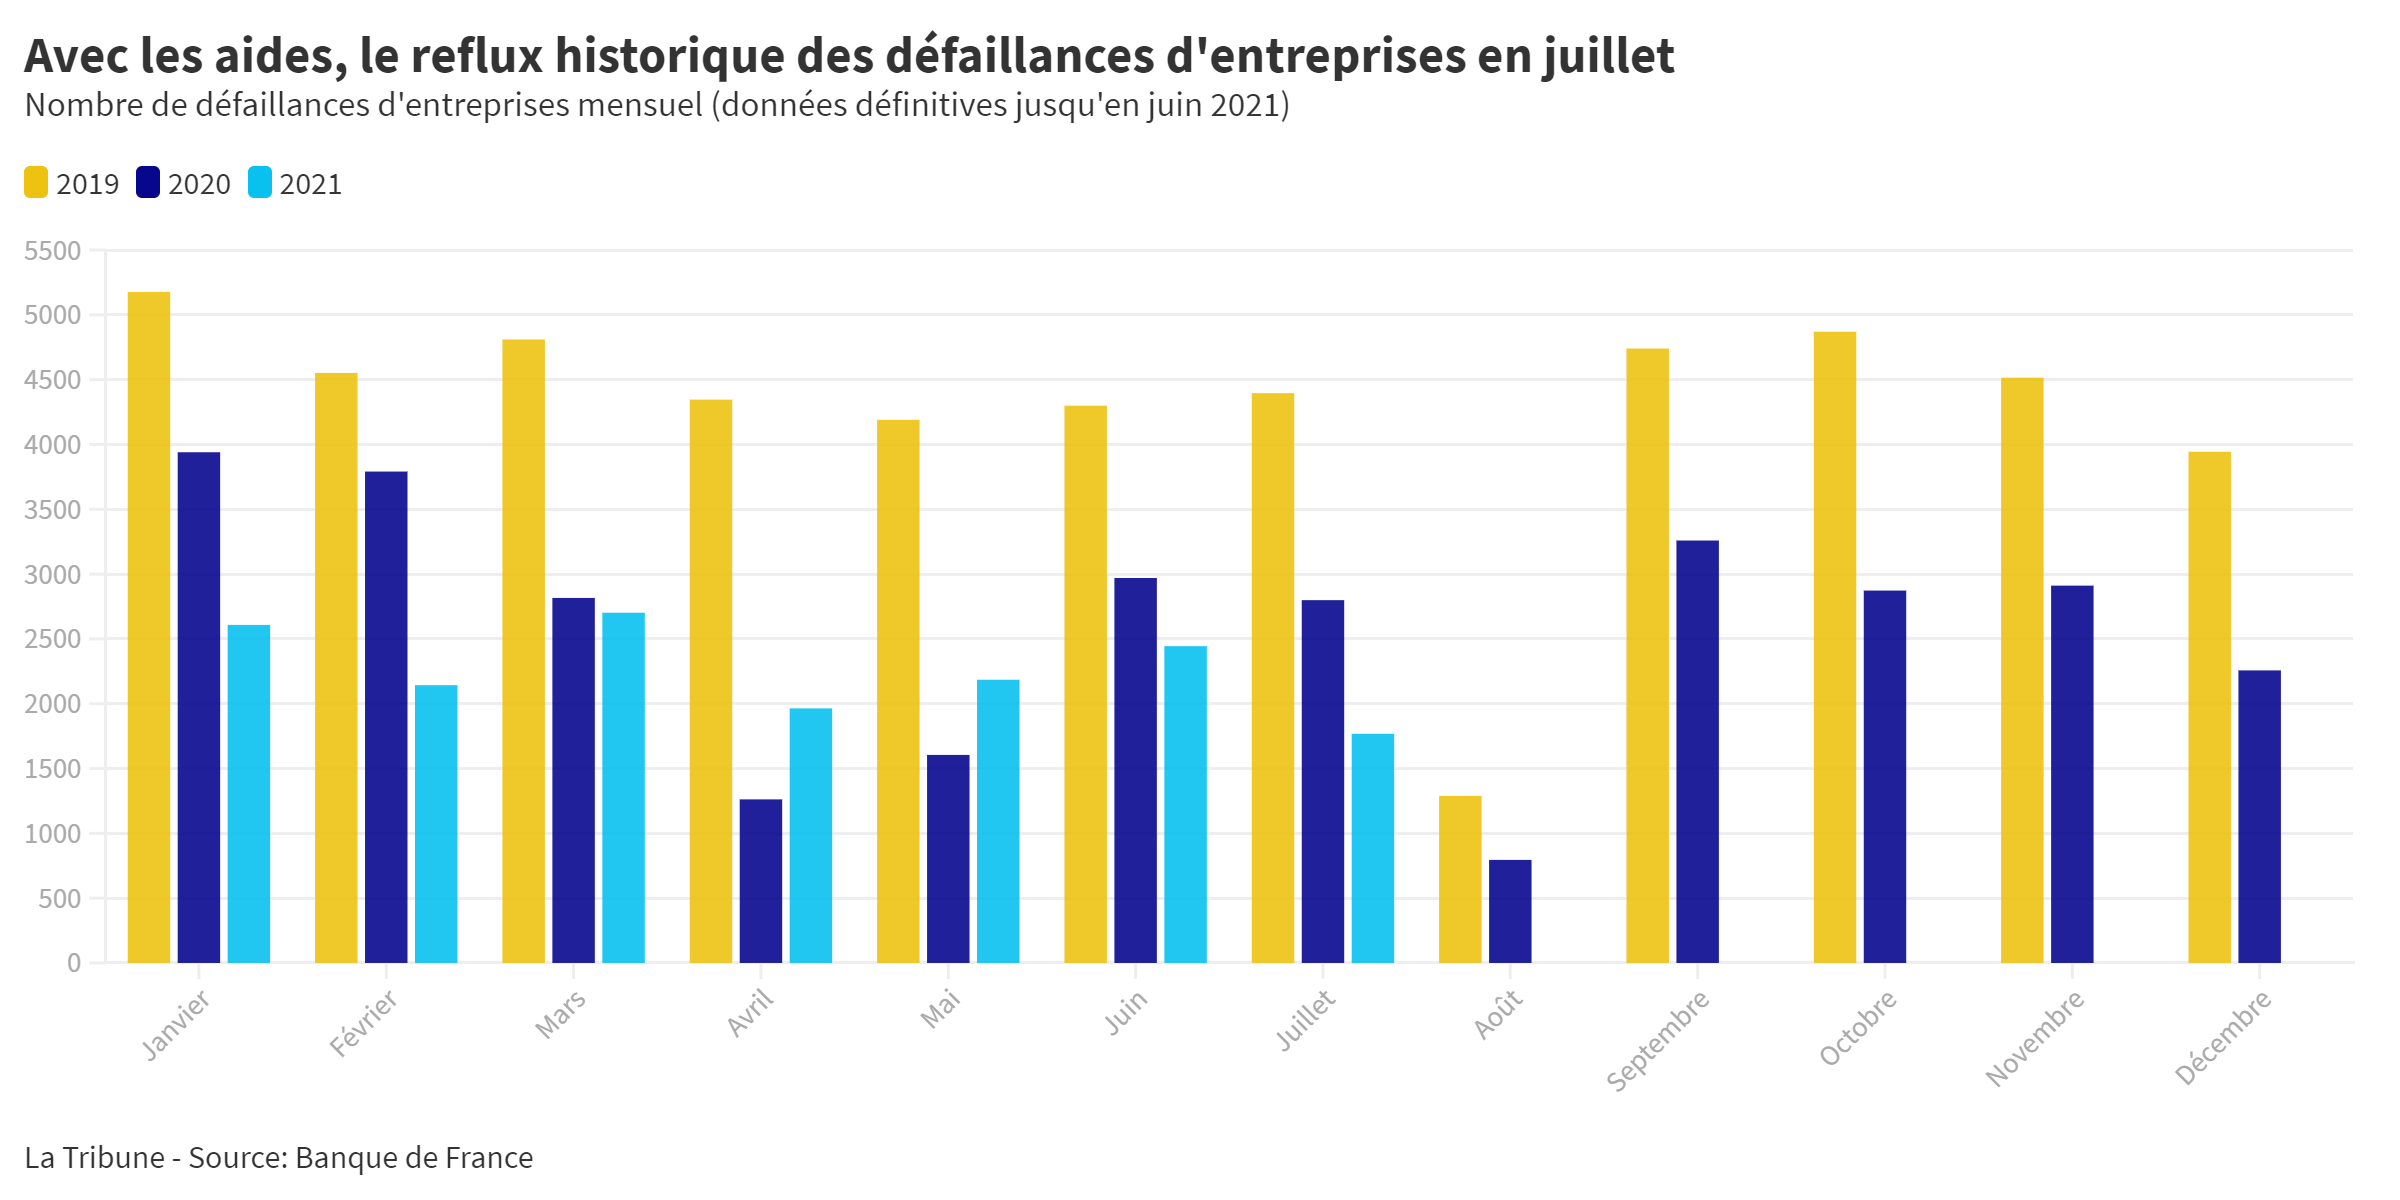 Les défaillances d'entreprises en chute libre en juillet, selon la Banque de France